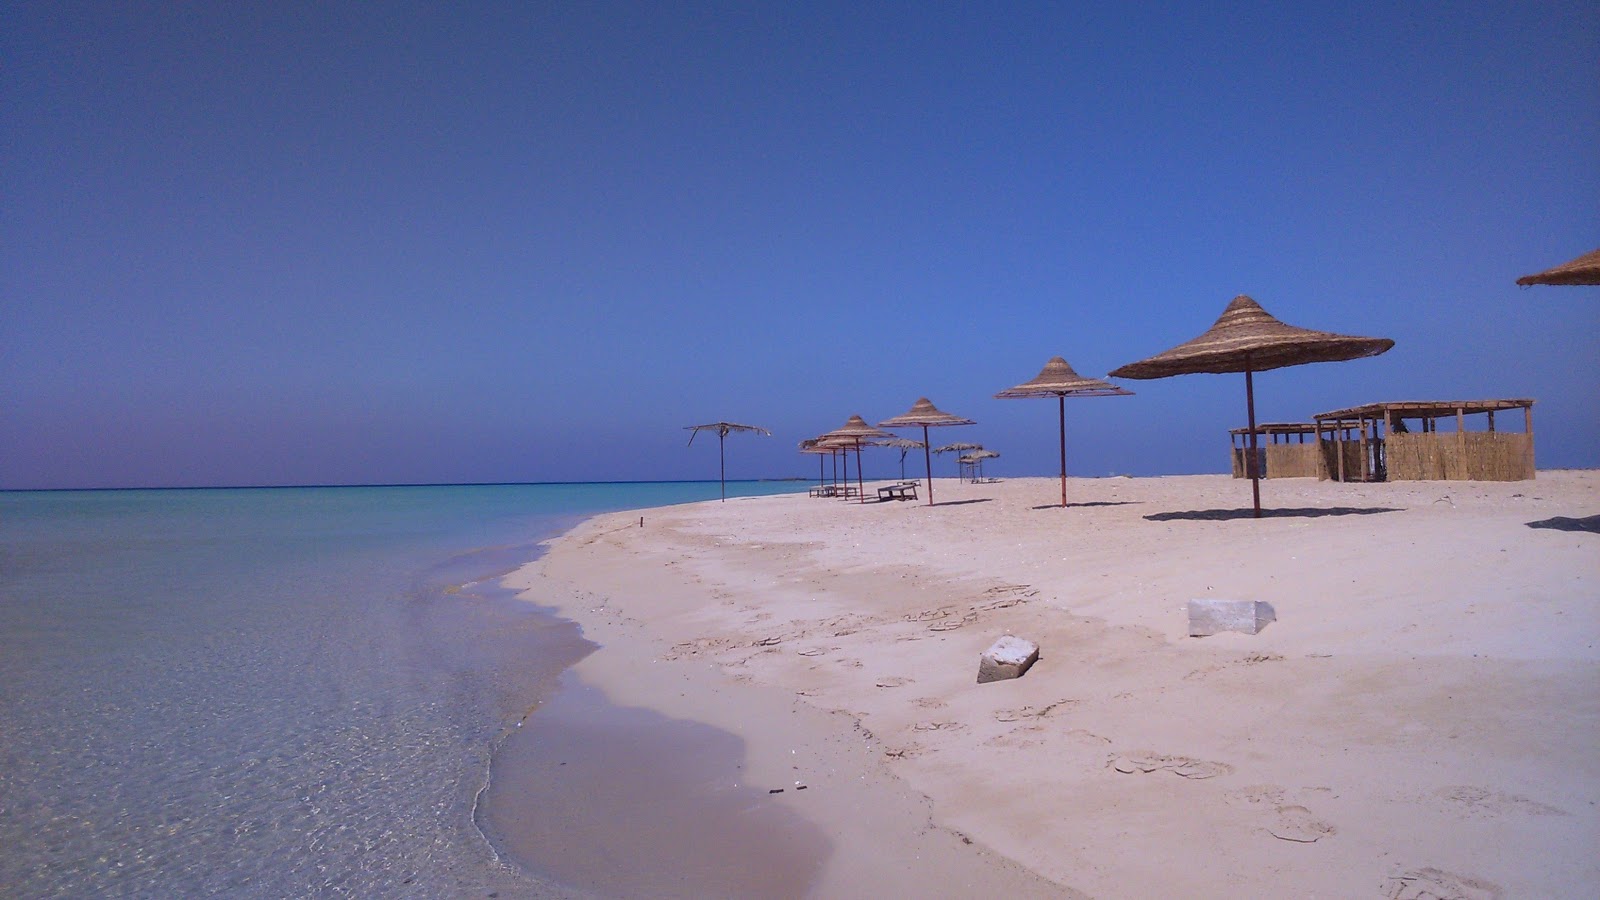 Fotografie cu Ras Sidr beach cu o suprafață de nisip strălucitor